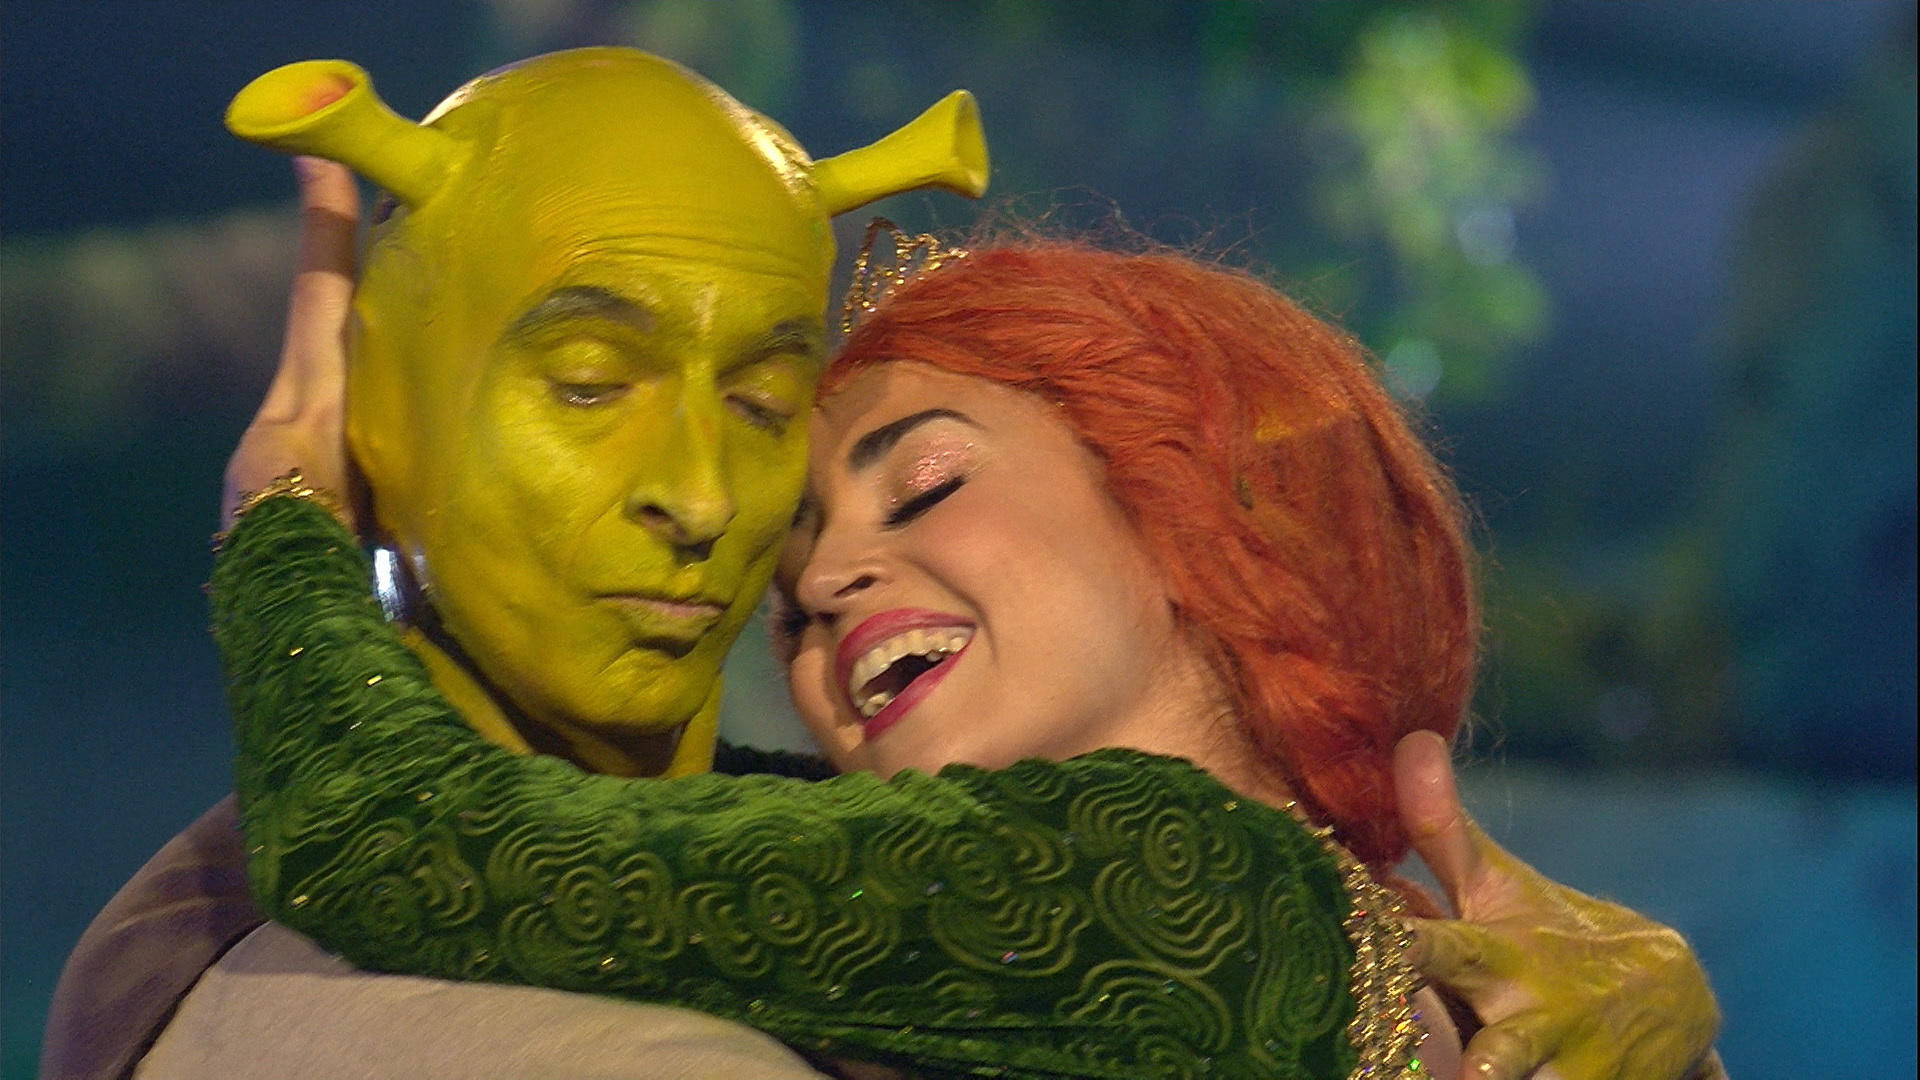  Ingolf Lück als "Shrek" ist pures Entertainment Let's Dance 2018: Finale